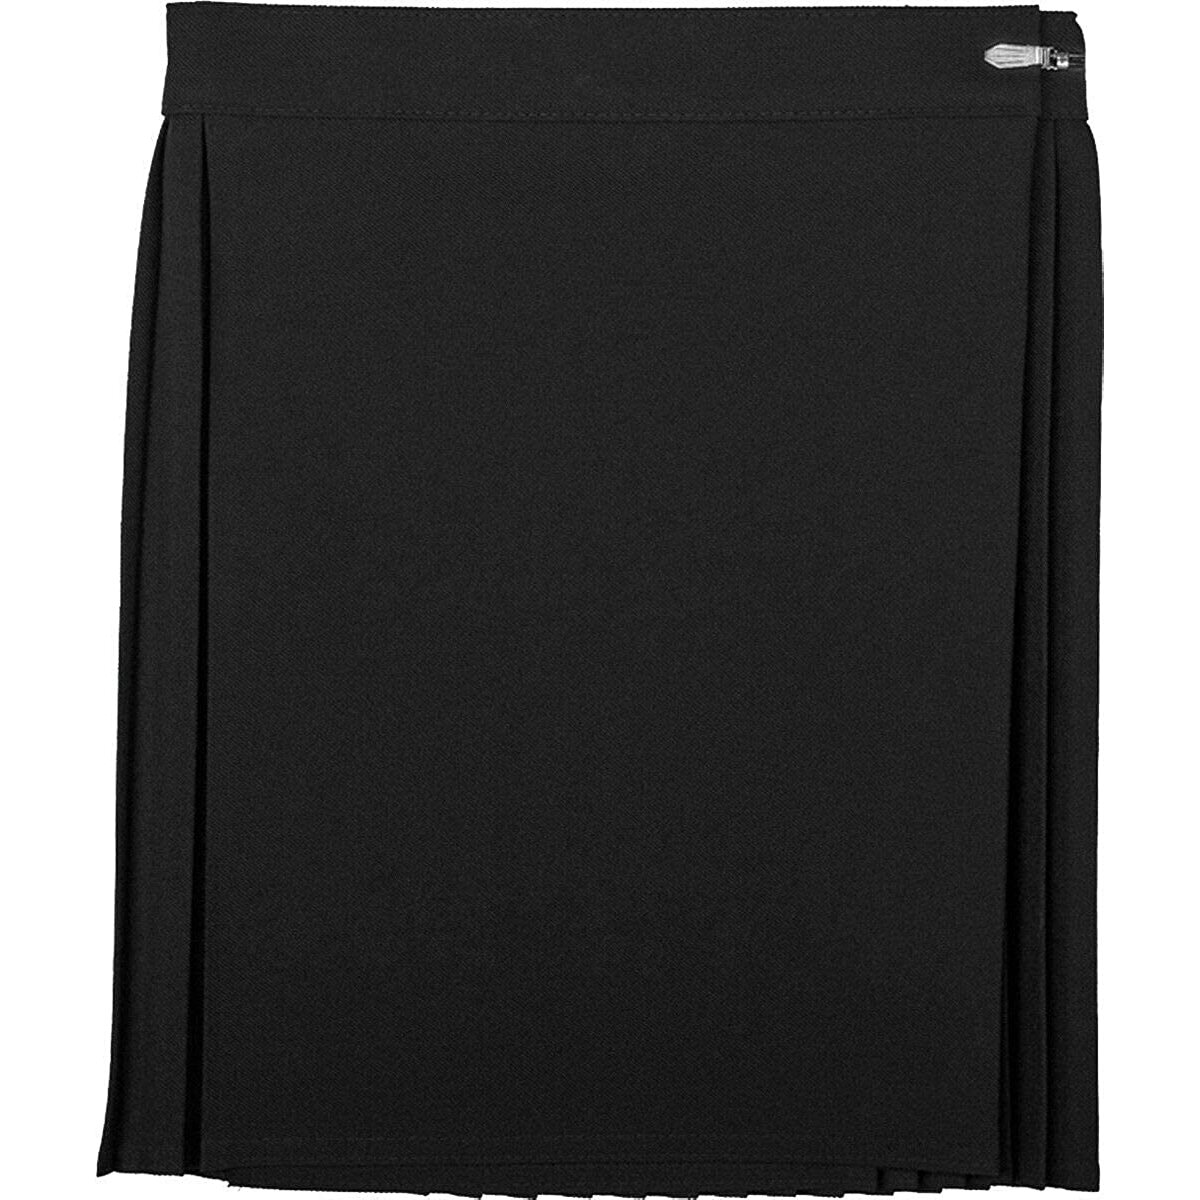 Girls Summer School Uniform P.E. Sports Netball Gym Skirt Black 30